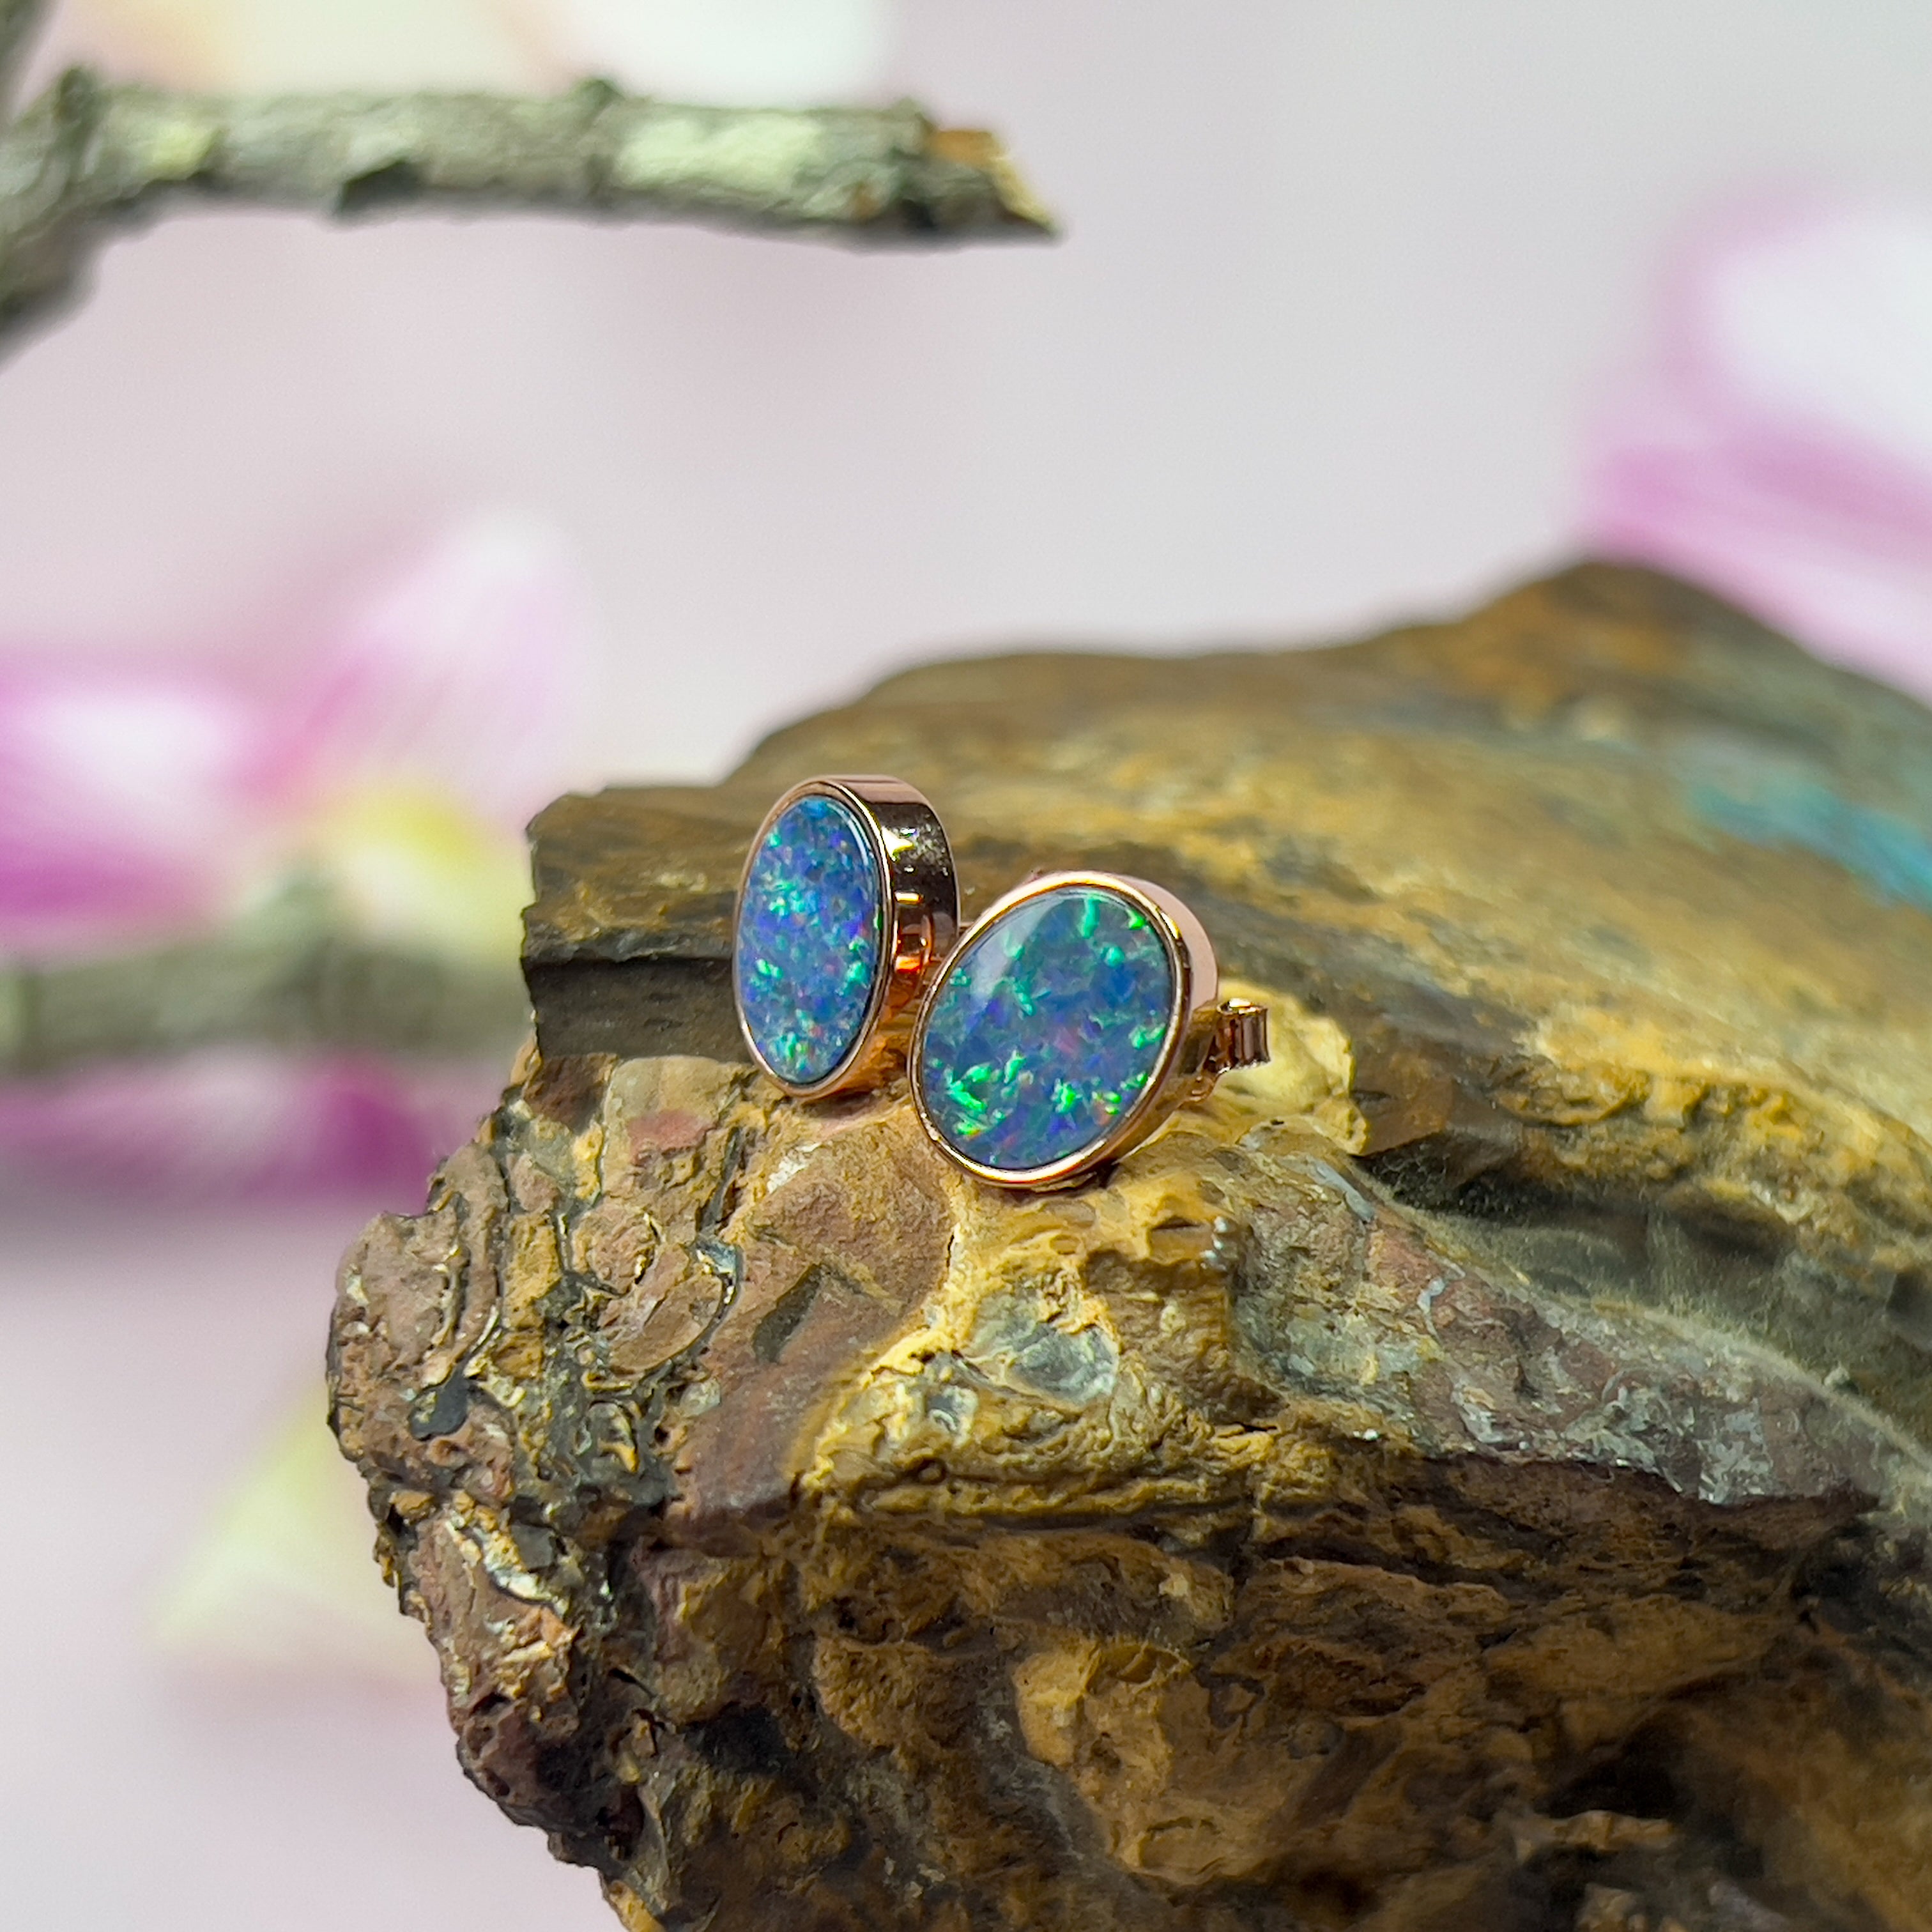 Rose Gold plated 8x6mm Opal doublet earrings - Masterpiece Jewellery Opal & Gems Sydney Australia | Online Shop